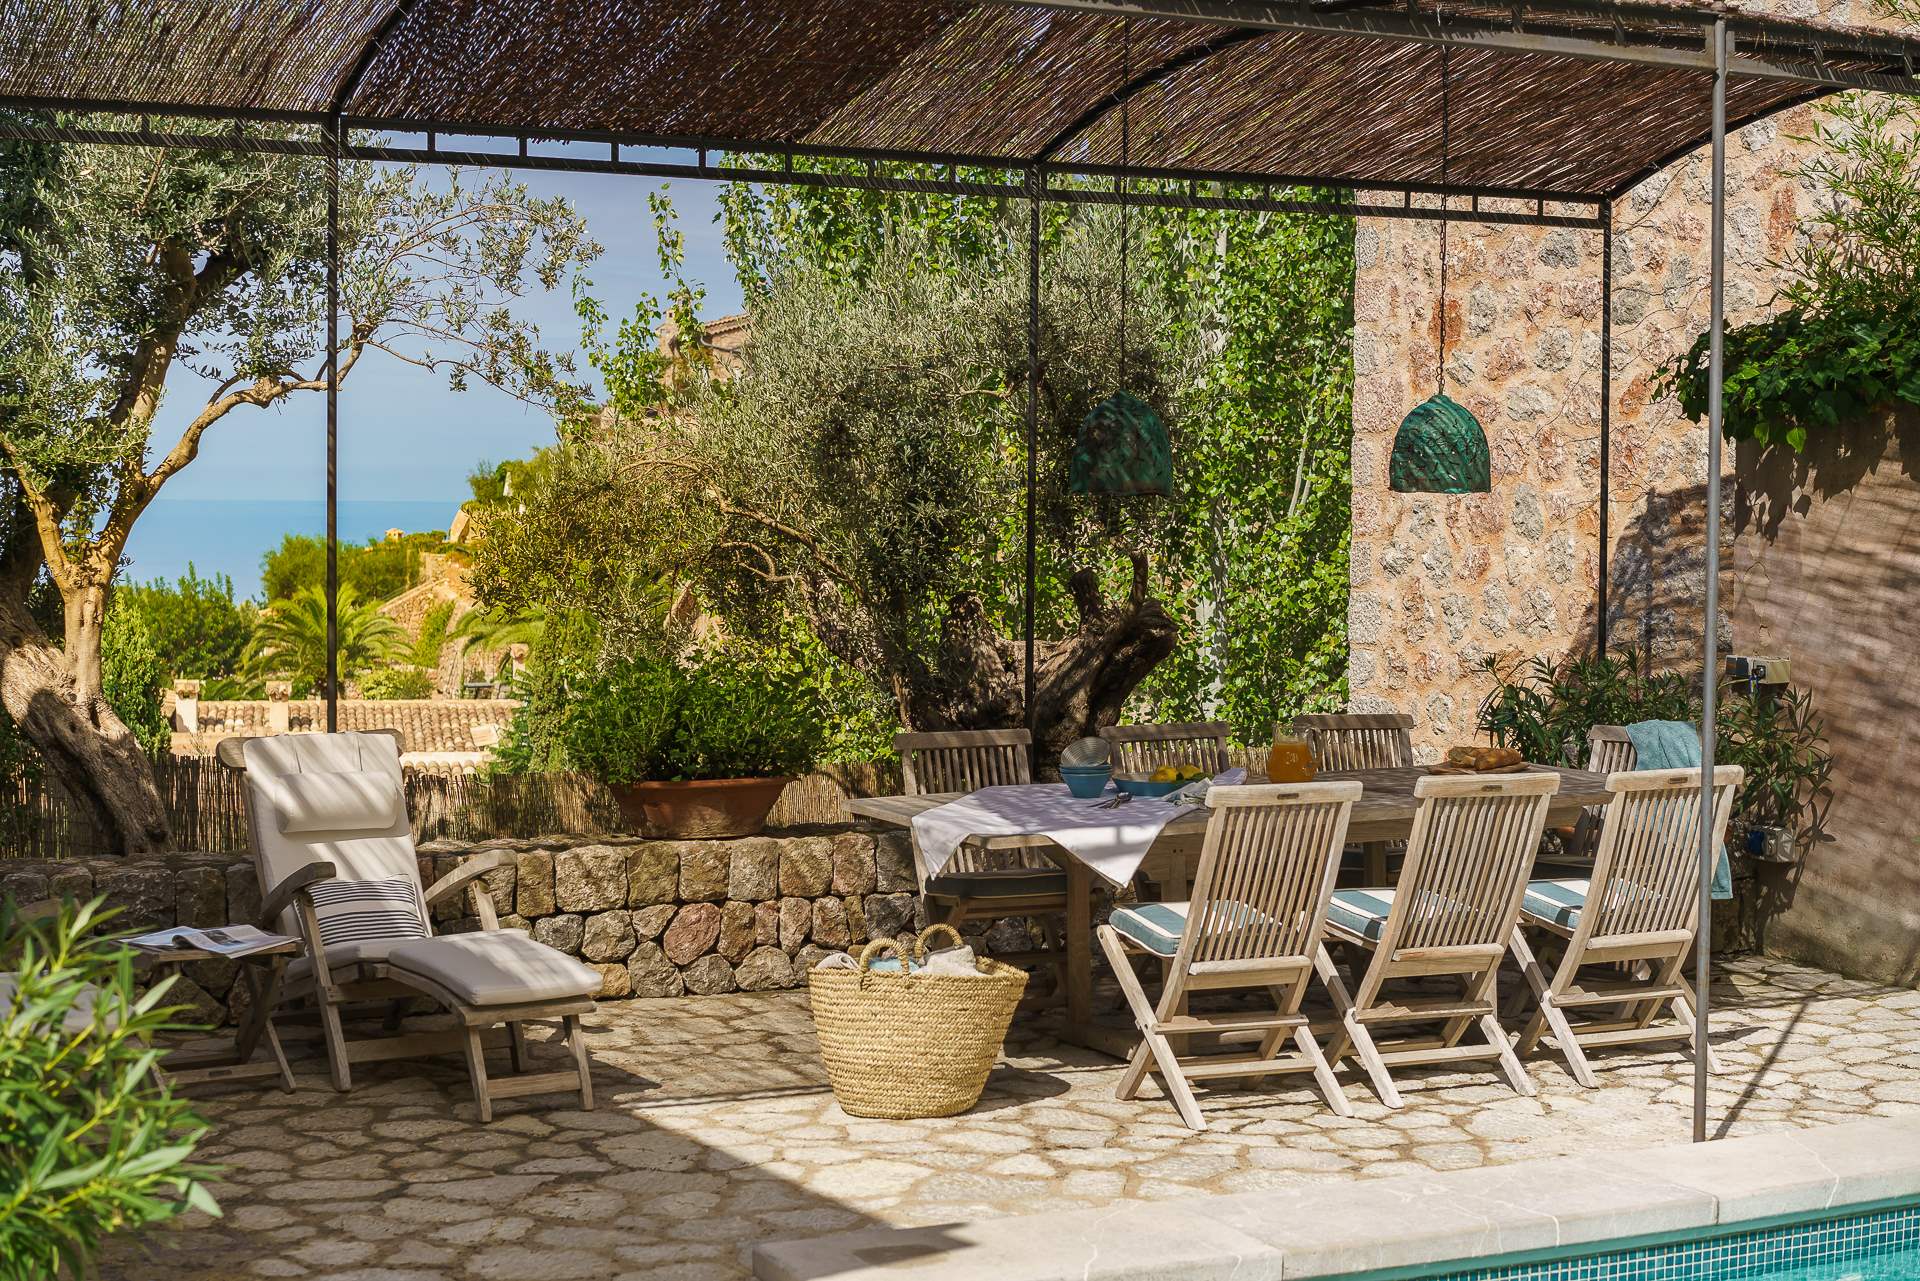 Sa Tanca, 3 Bedroom Rental, 3 bedroom villa in Soller & Deia, Majorca Photo #4